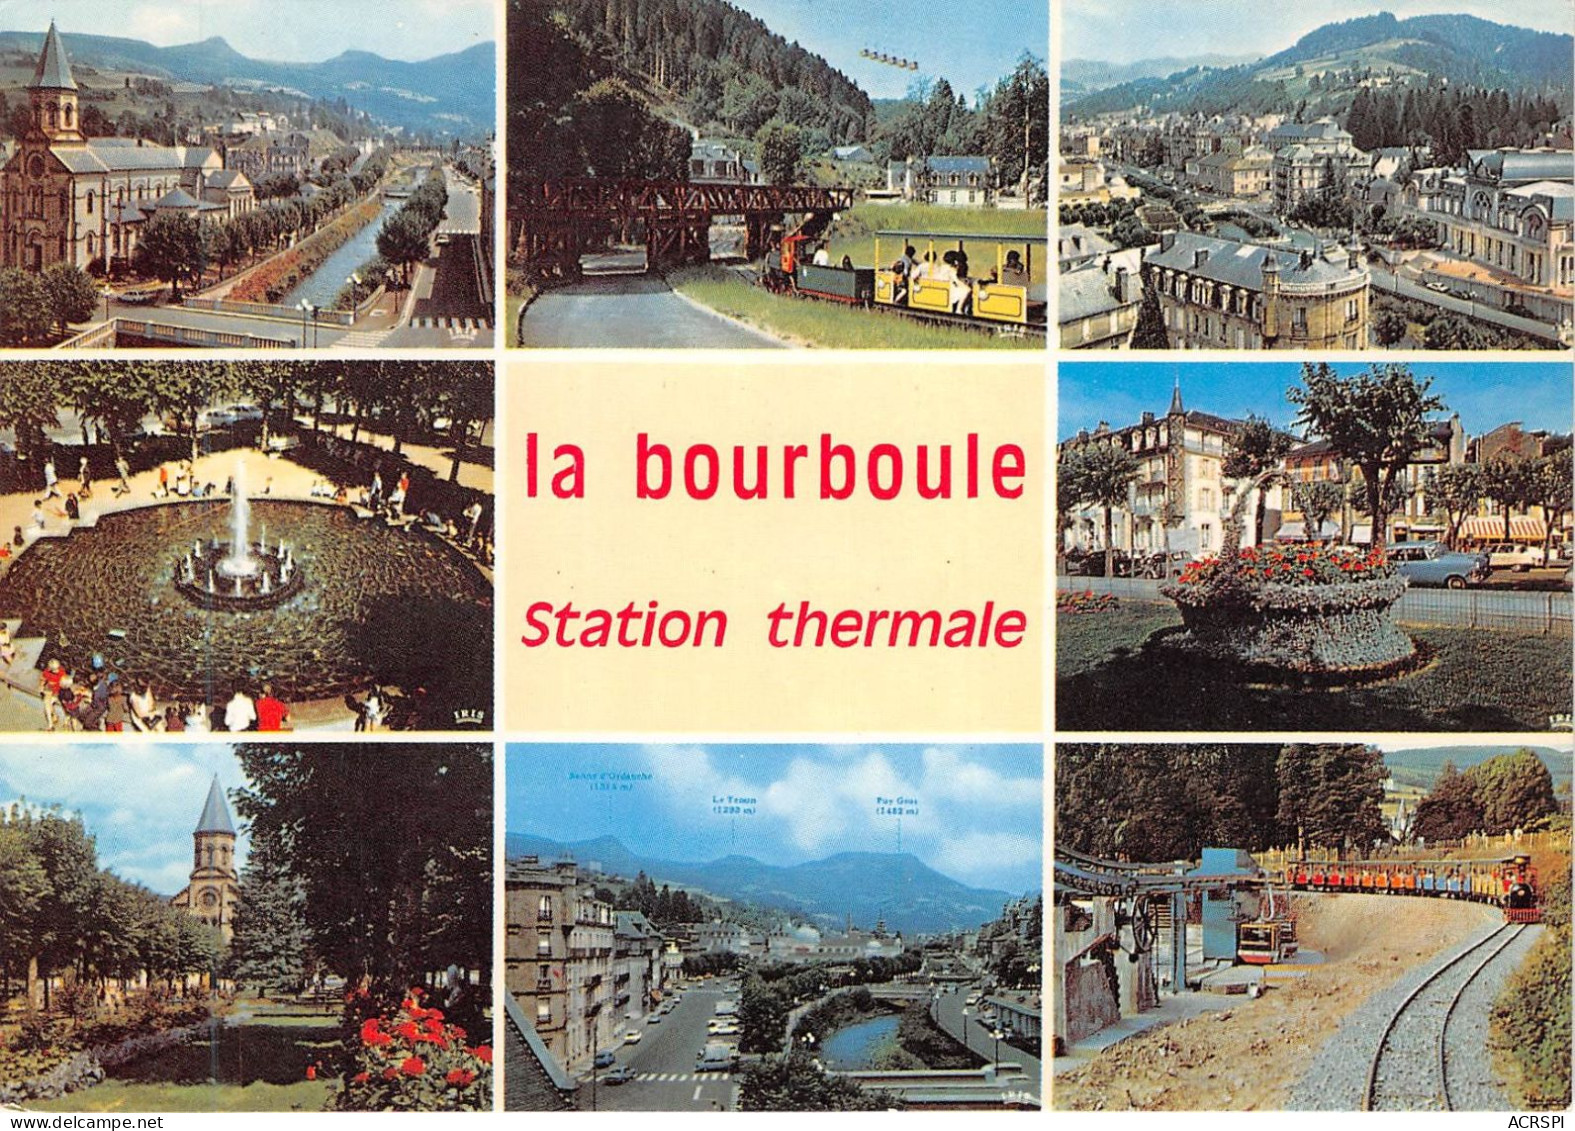 LA BOURBOULE Station Thermale Et Touristique Les Ponts Sur La Dordogne 27(scan Recto-verso) MA2218 - La Bourboule